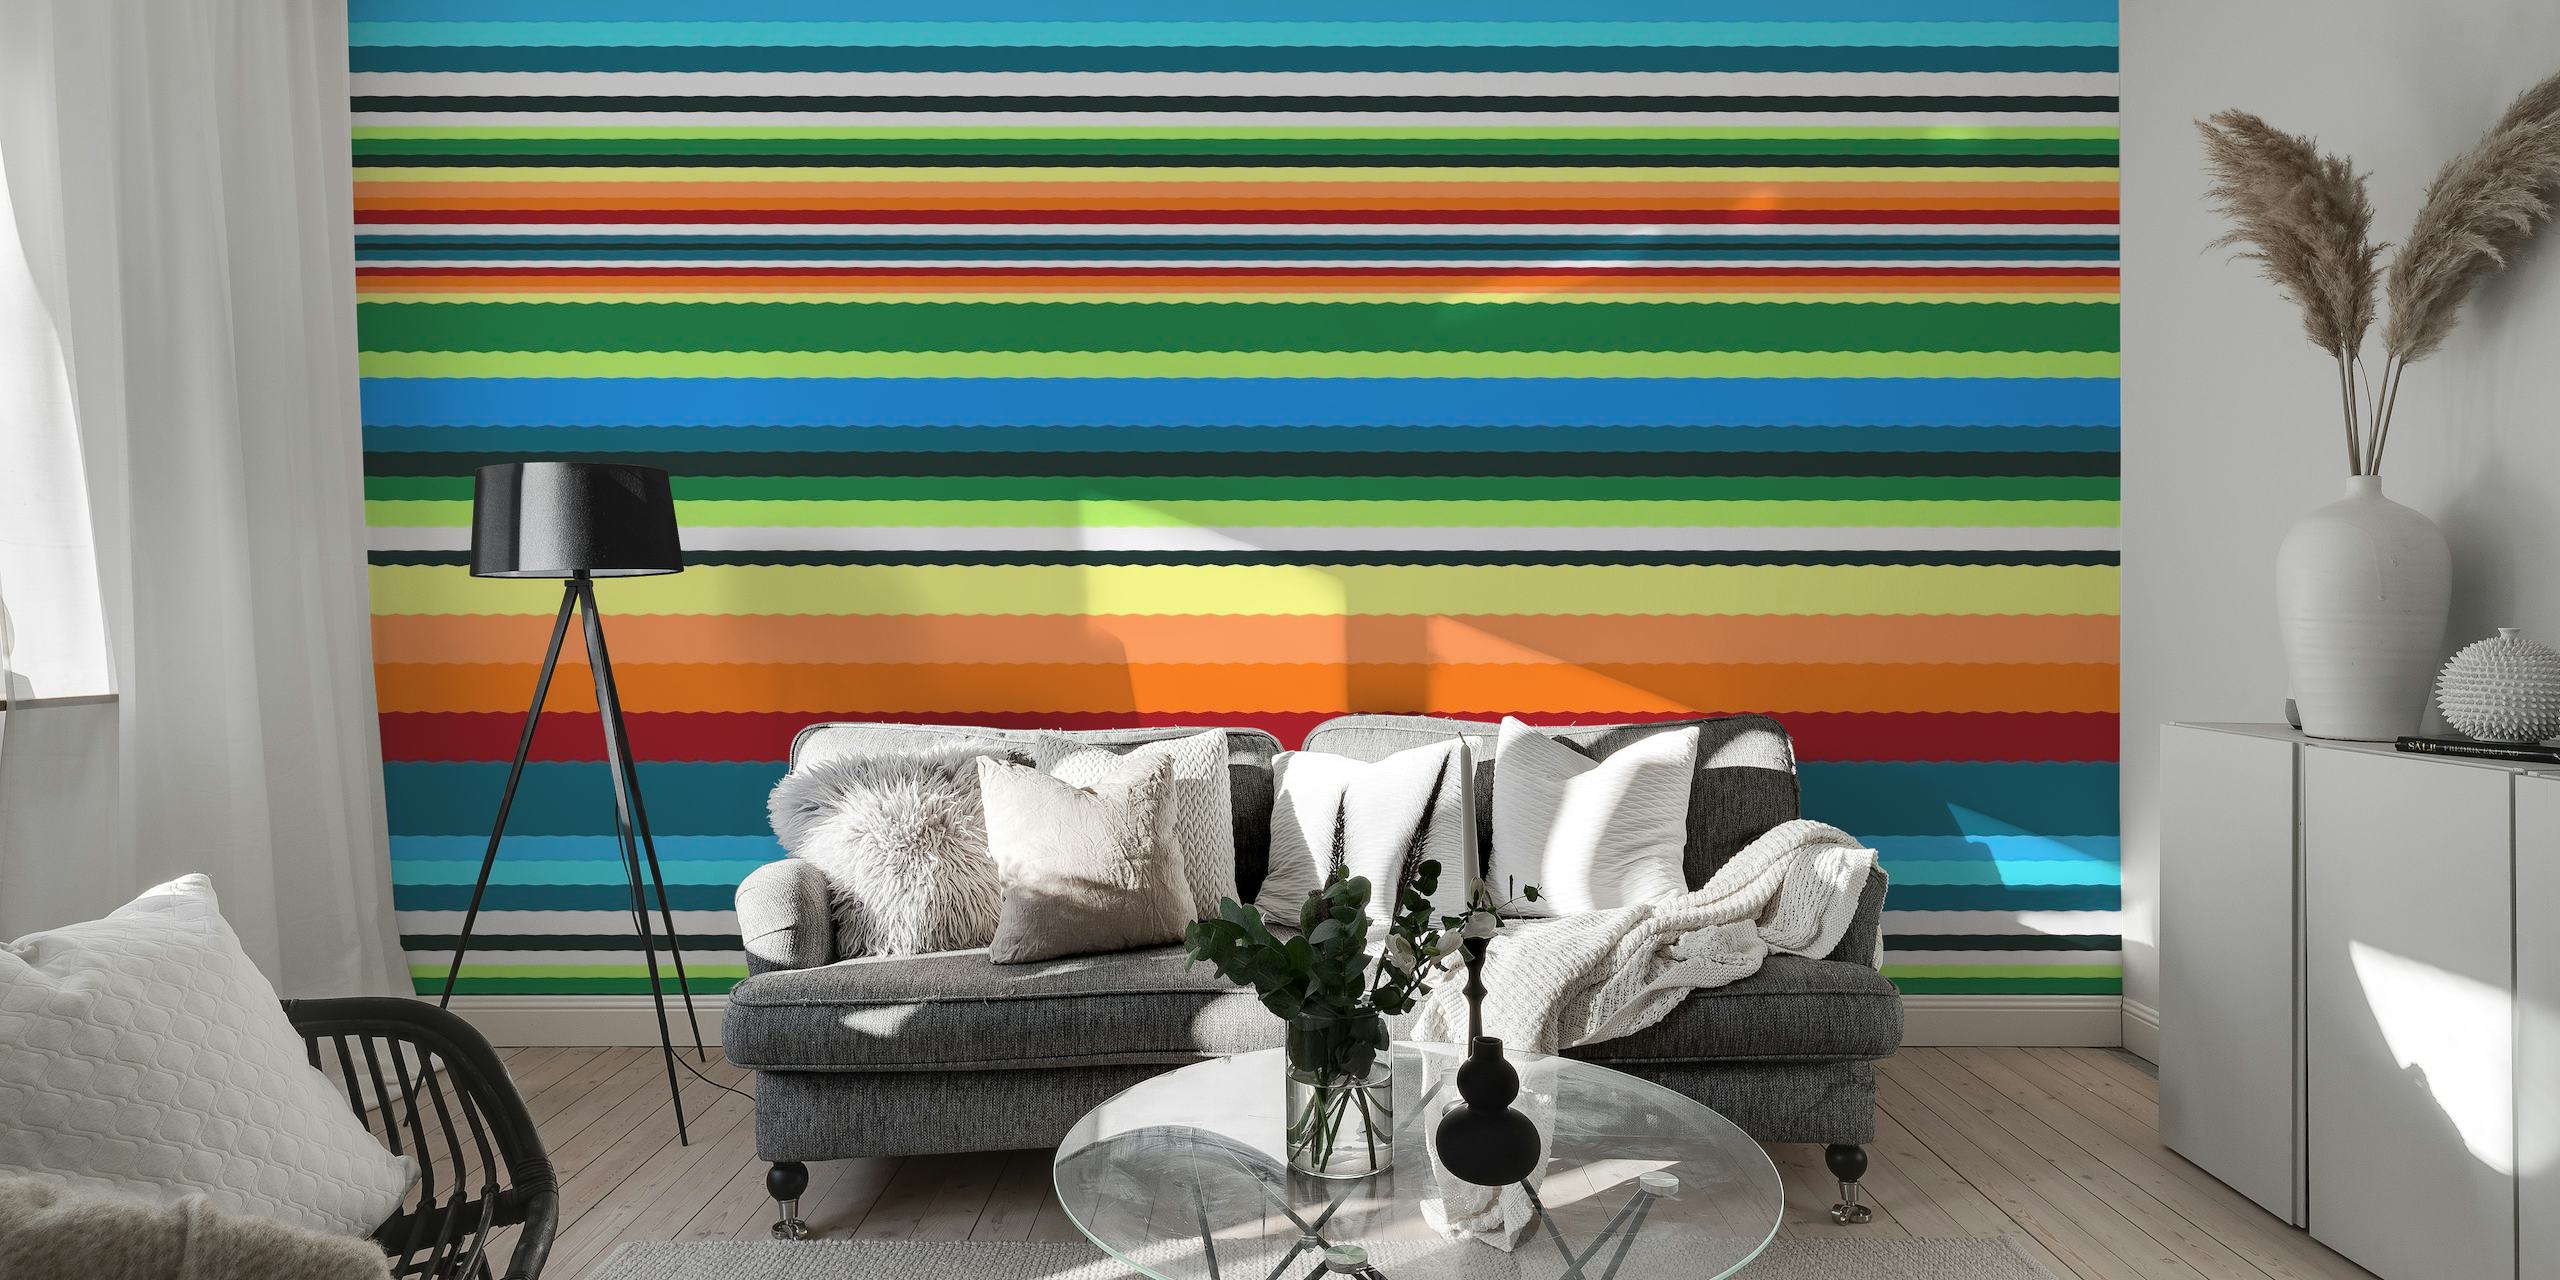 Mural de parede listrado colorido intitulado 'Bohemian Bright' com linhas vibrantes de várias cores.